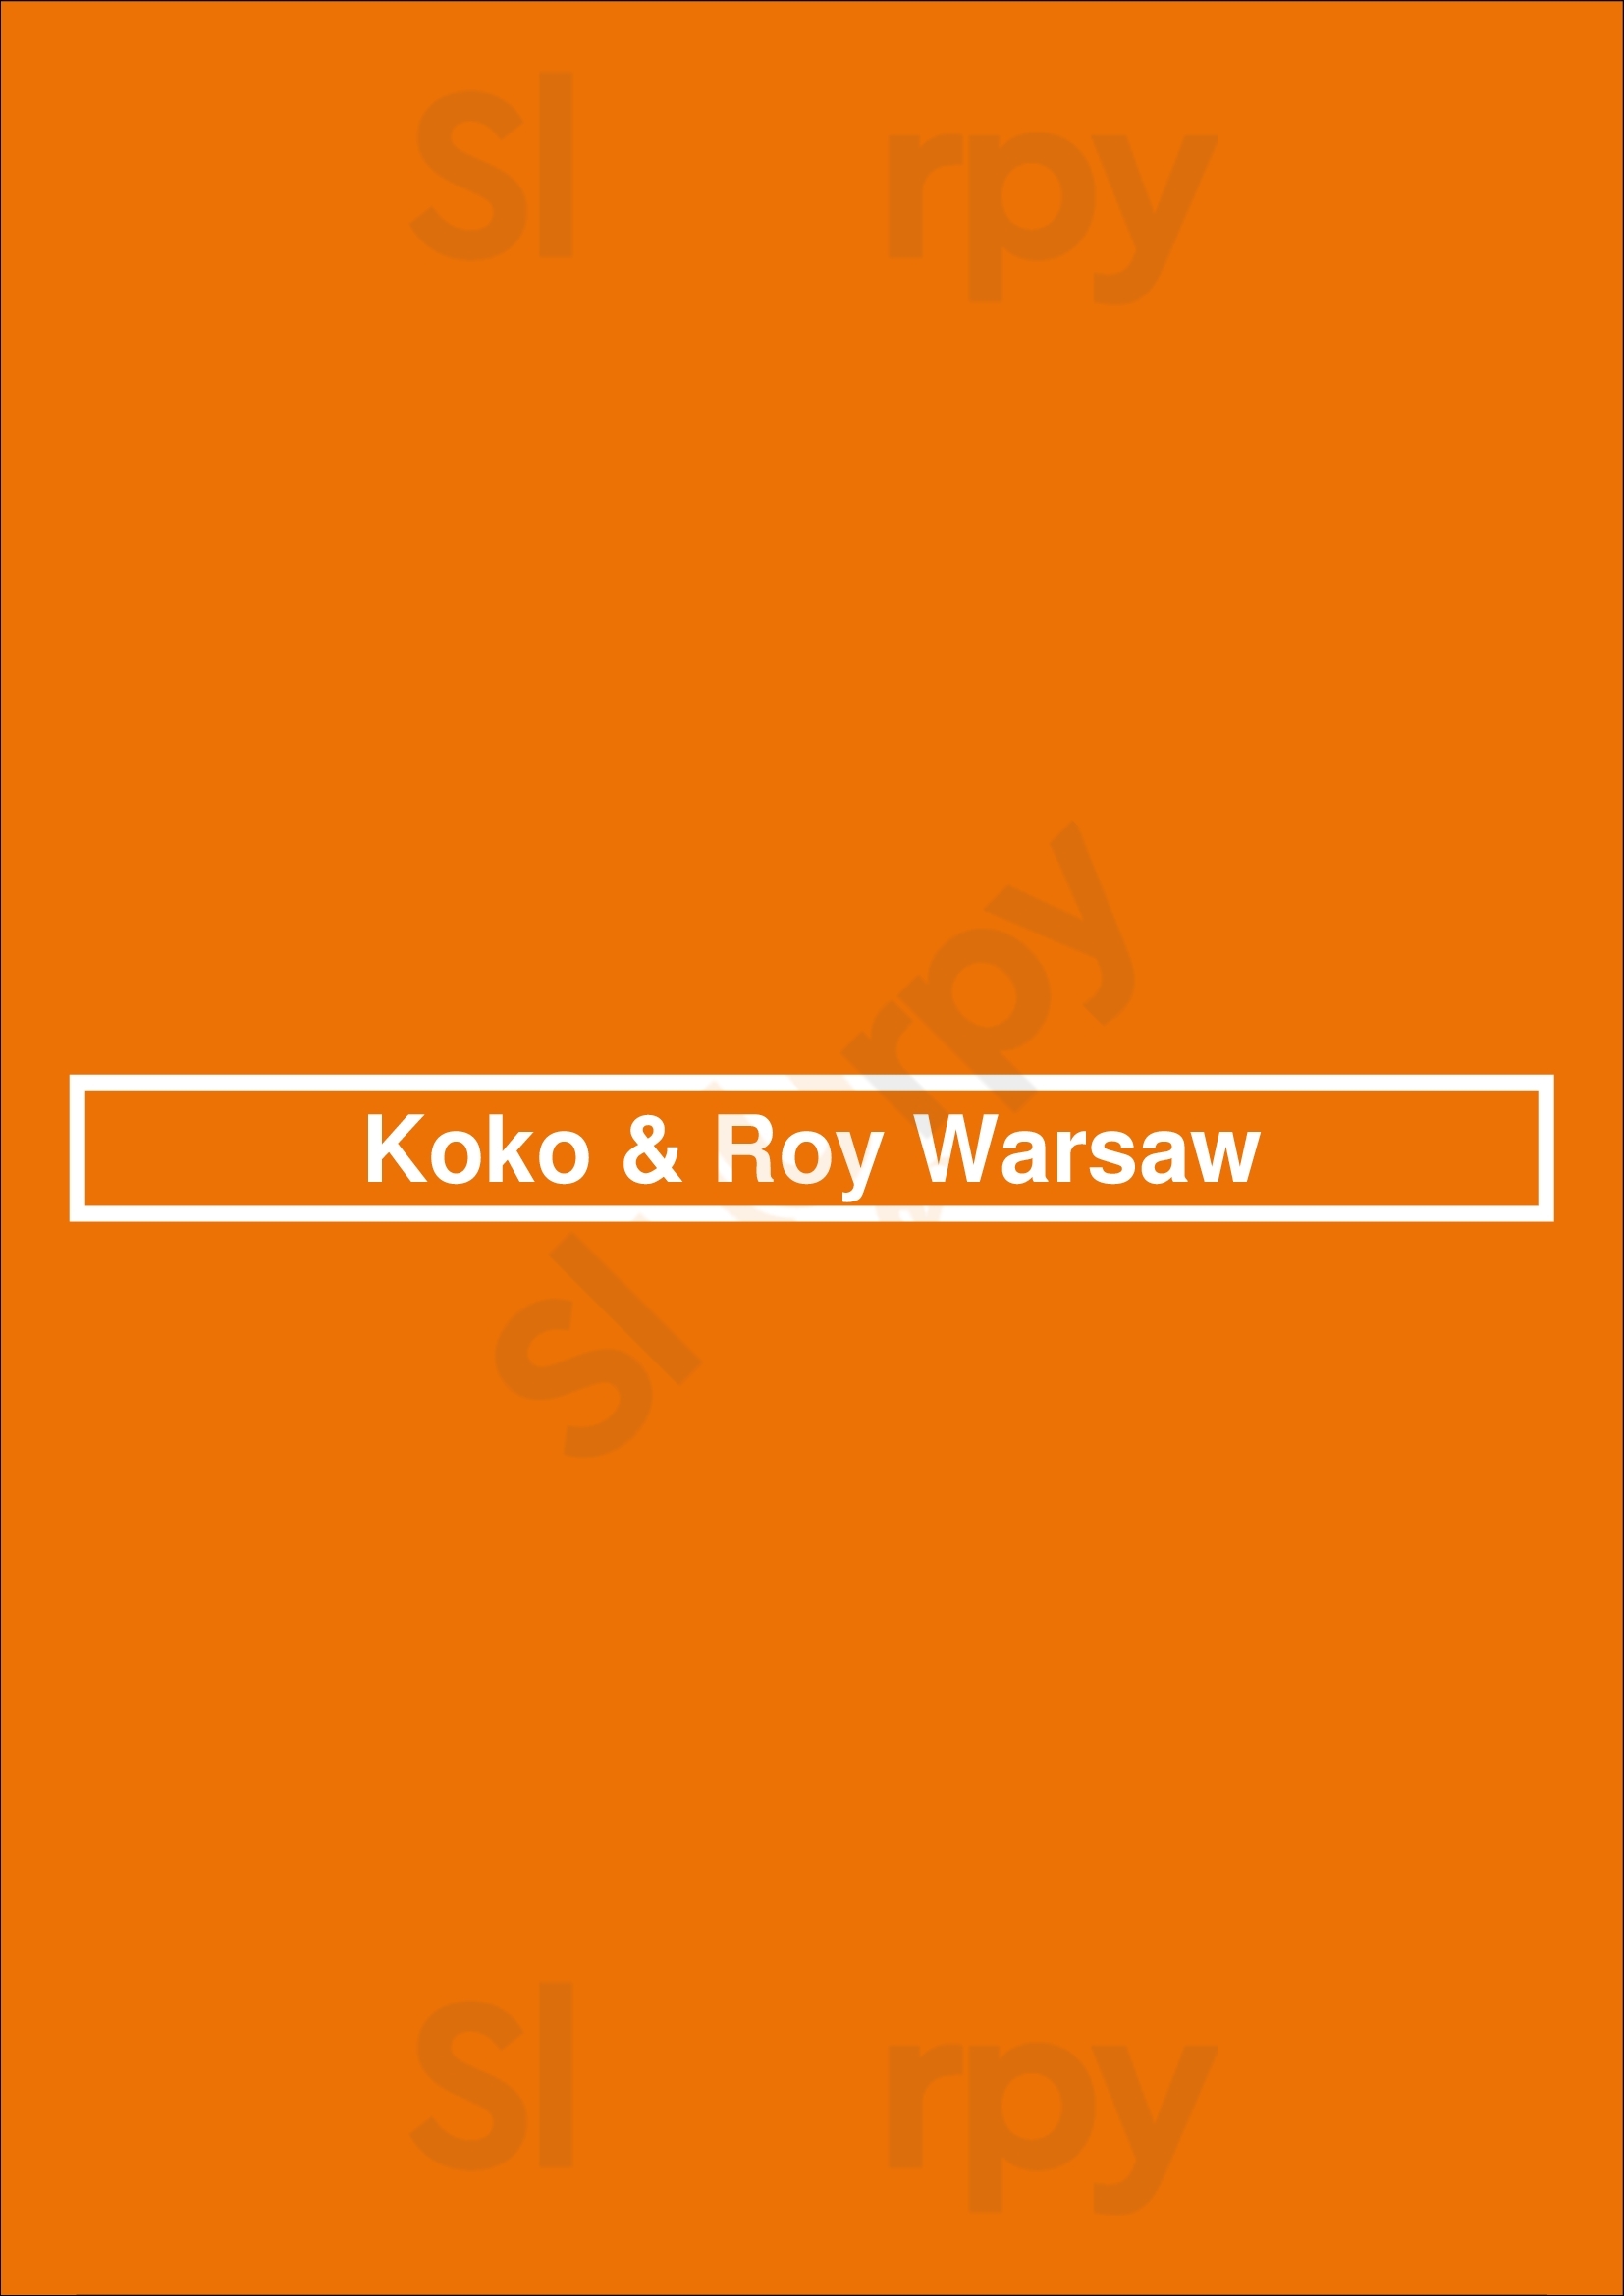 Koko & Roy Warsaw Warszawa Menu - 1